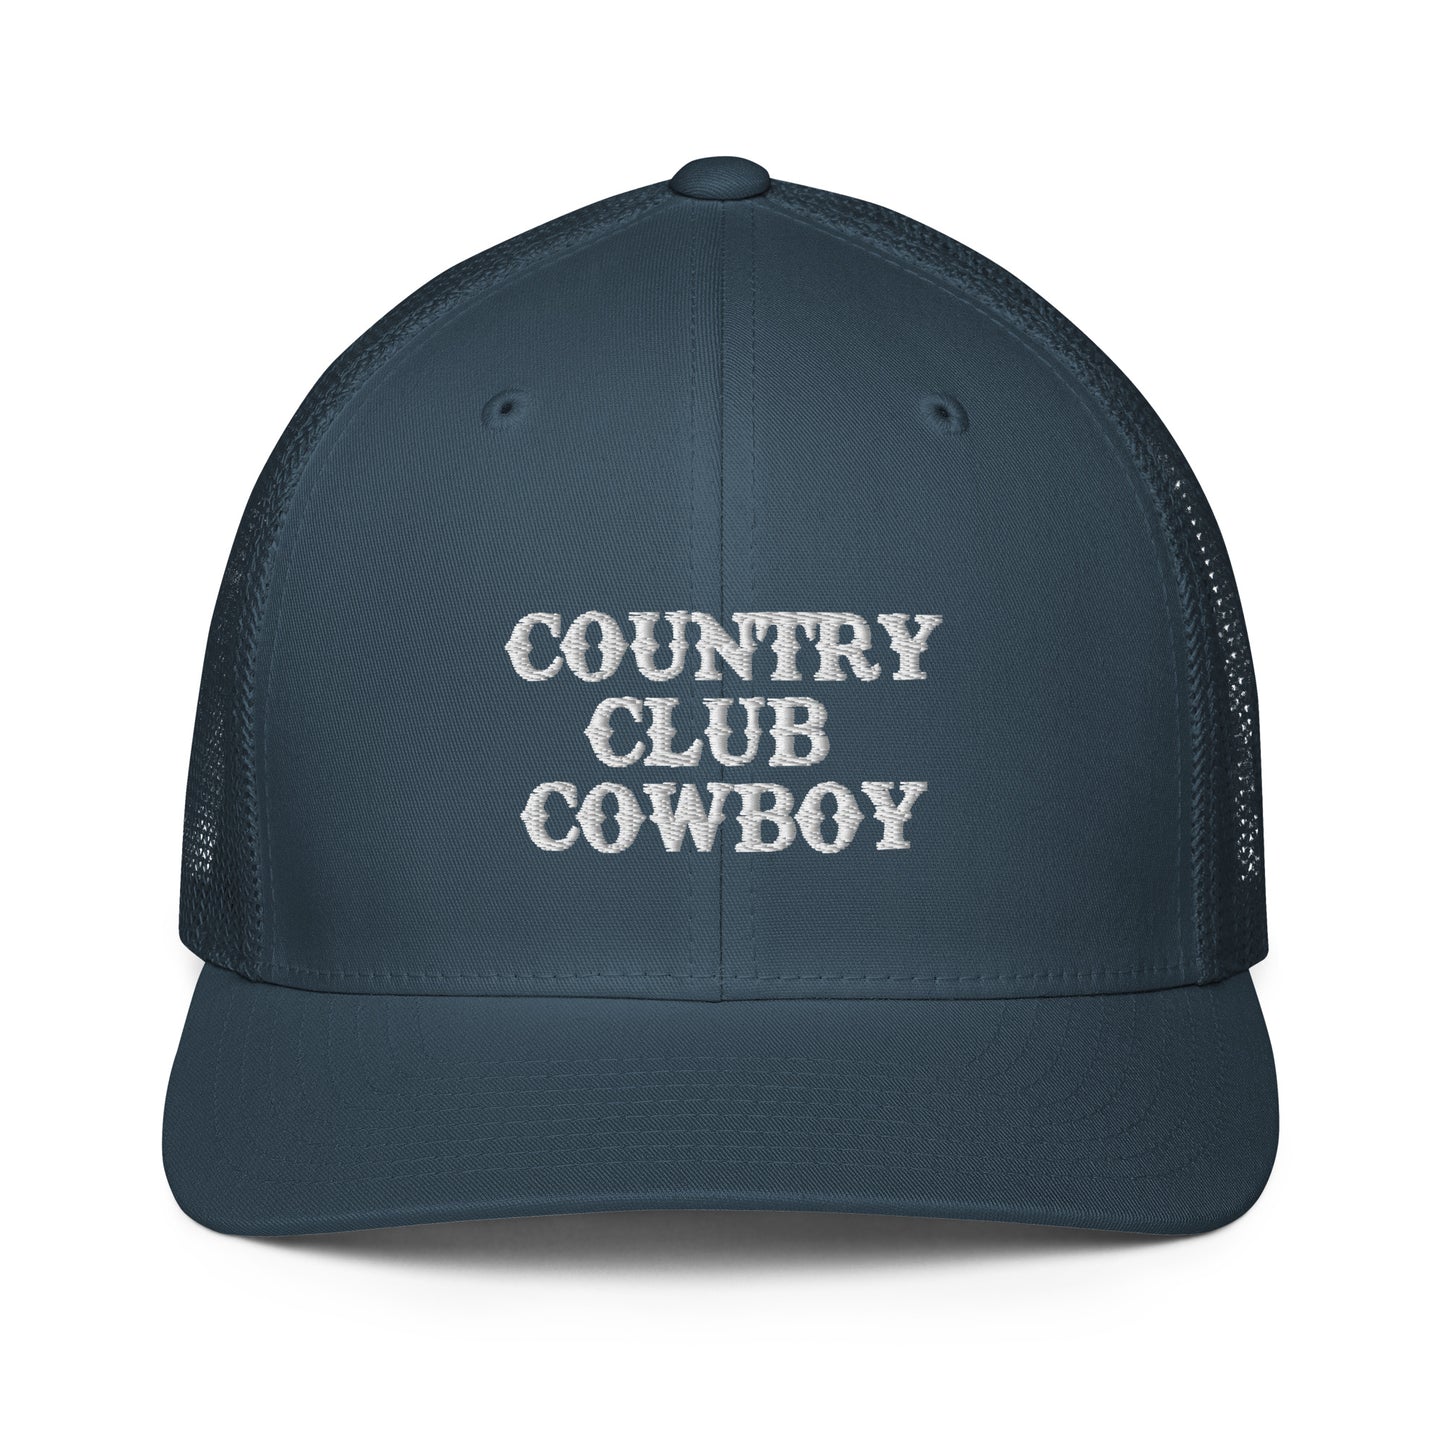 Country Club Cowboy Trucker Hat